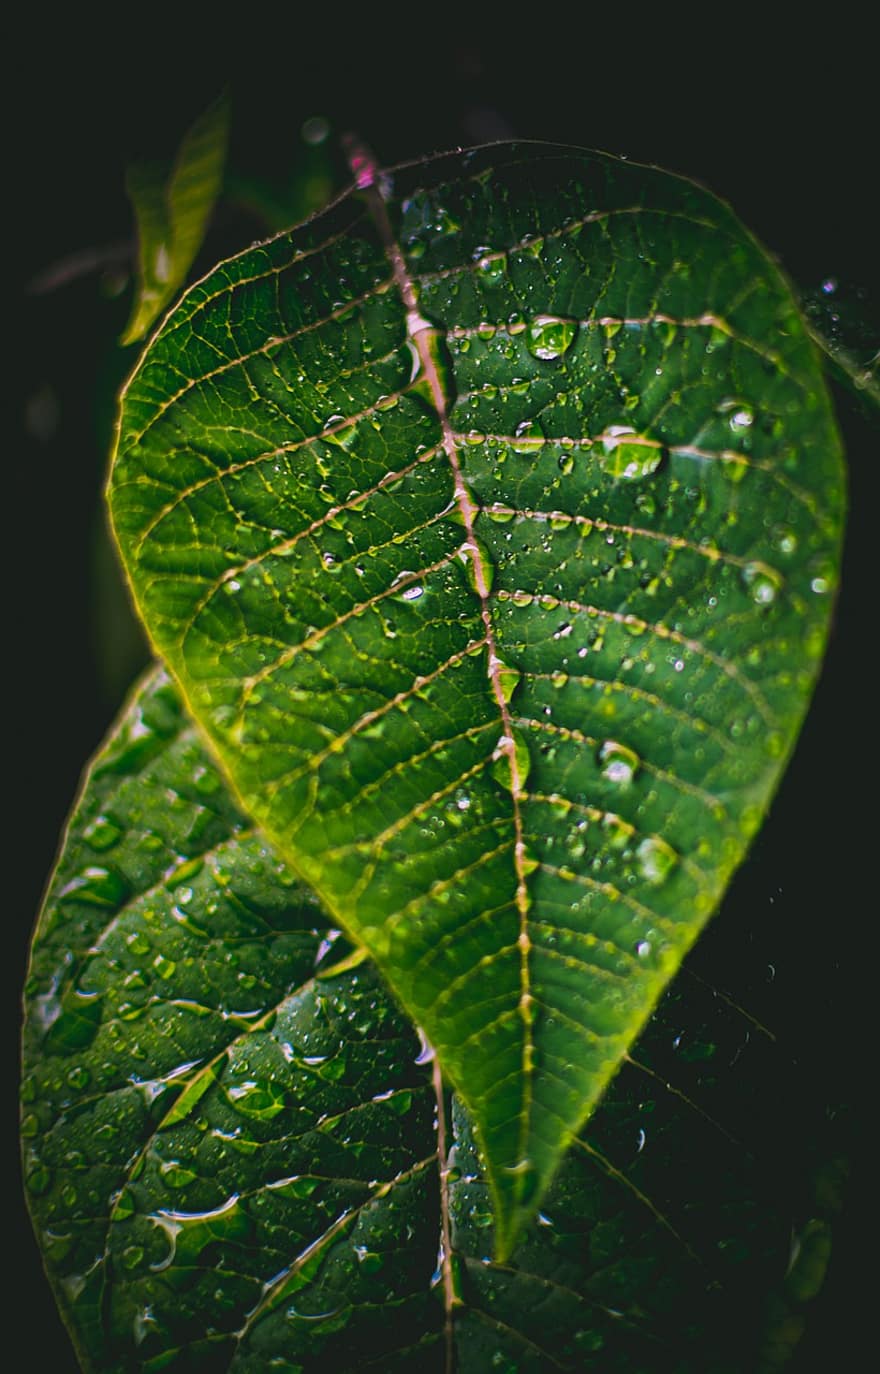 เม็ดฝน, ใบสีเขียว, ฝน, สีเขียว, ธรรมชาติ, ใบไม้, ปลูก, เปียก, น้ำฝน, น้ำ, สวน